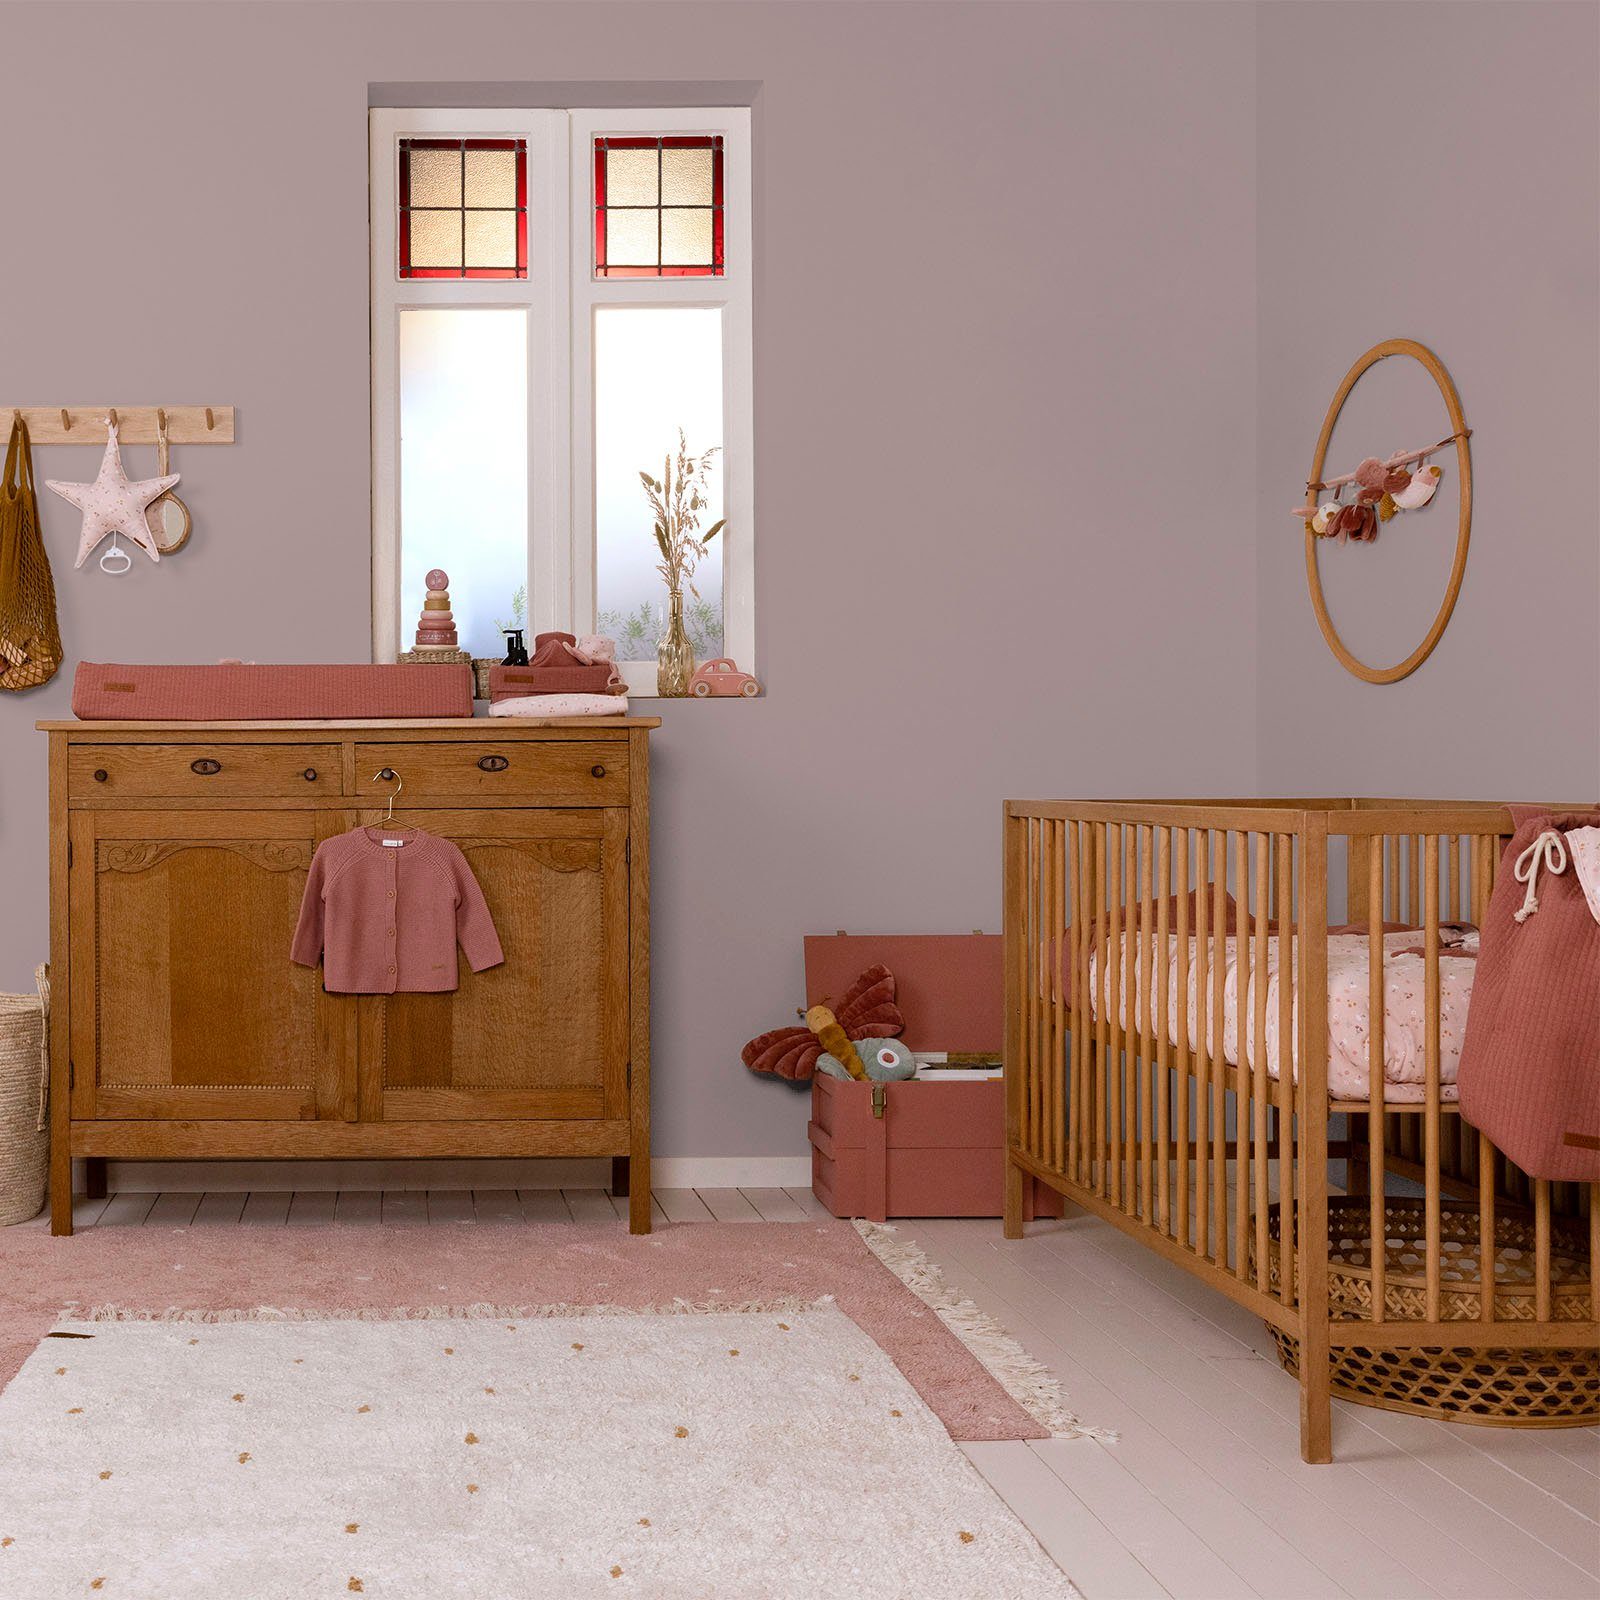 hochdeckend DUTCH Kinderzimmer und Wallpaint, Mauve matt, waschbeständig, Waves LITTLE für geeignet extra Lila Wandfarbe